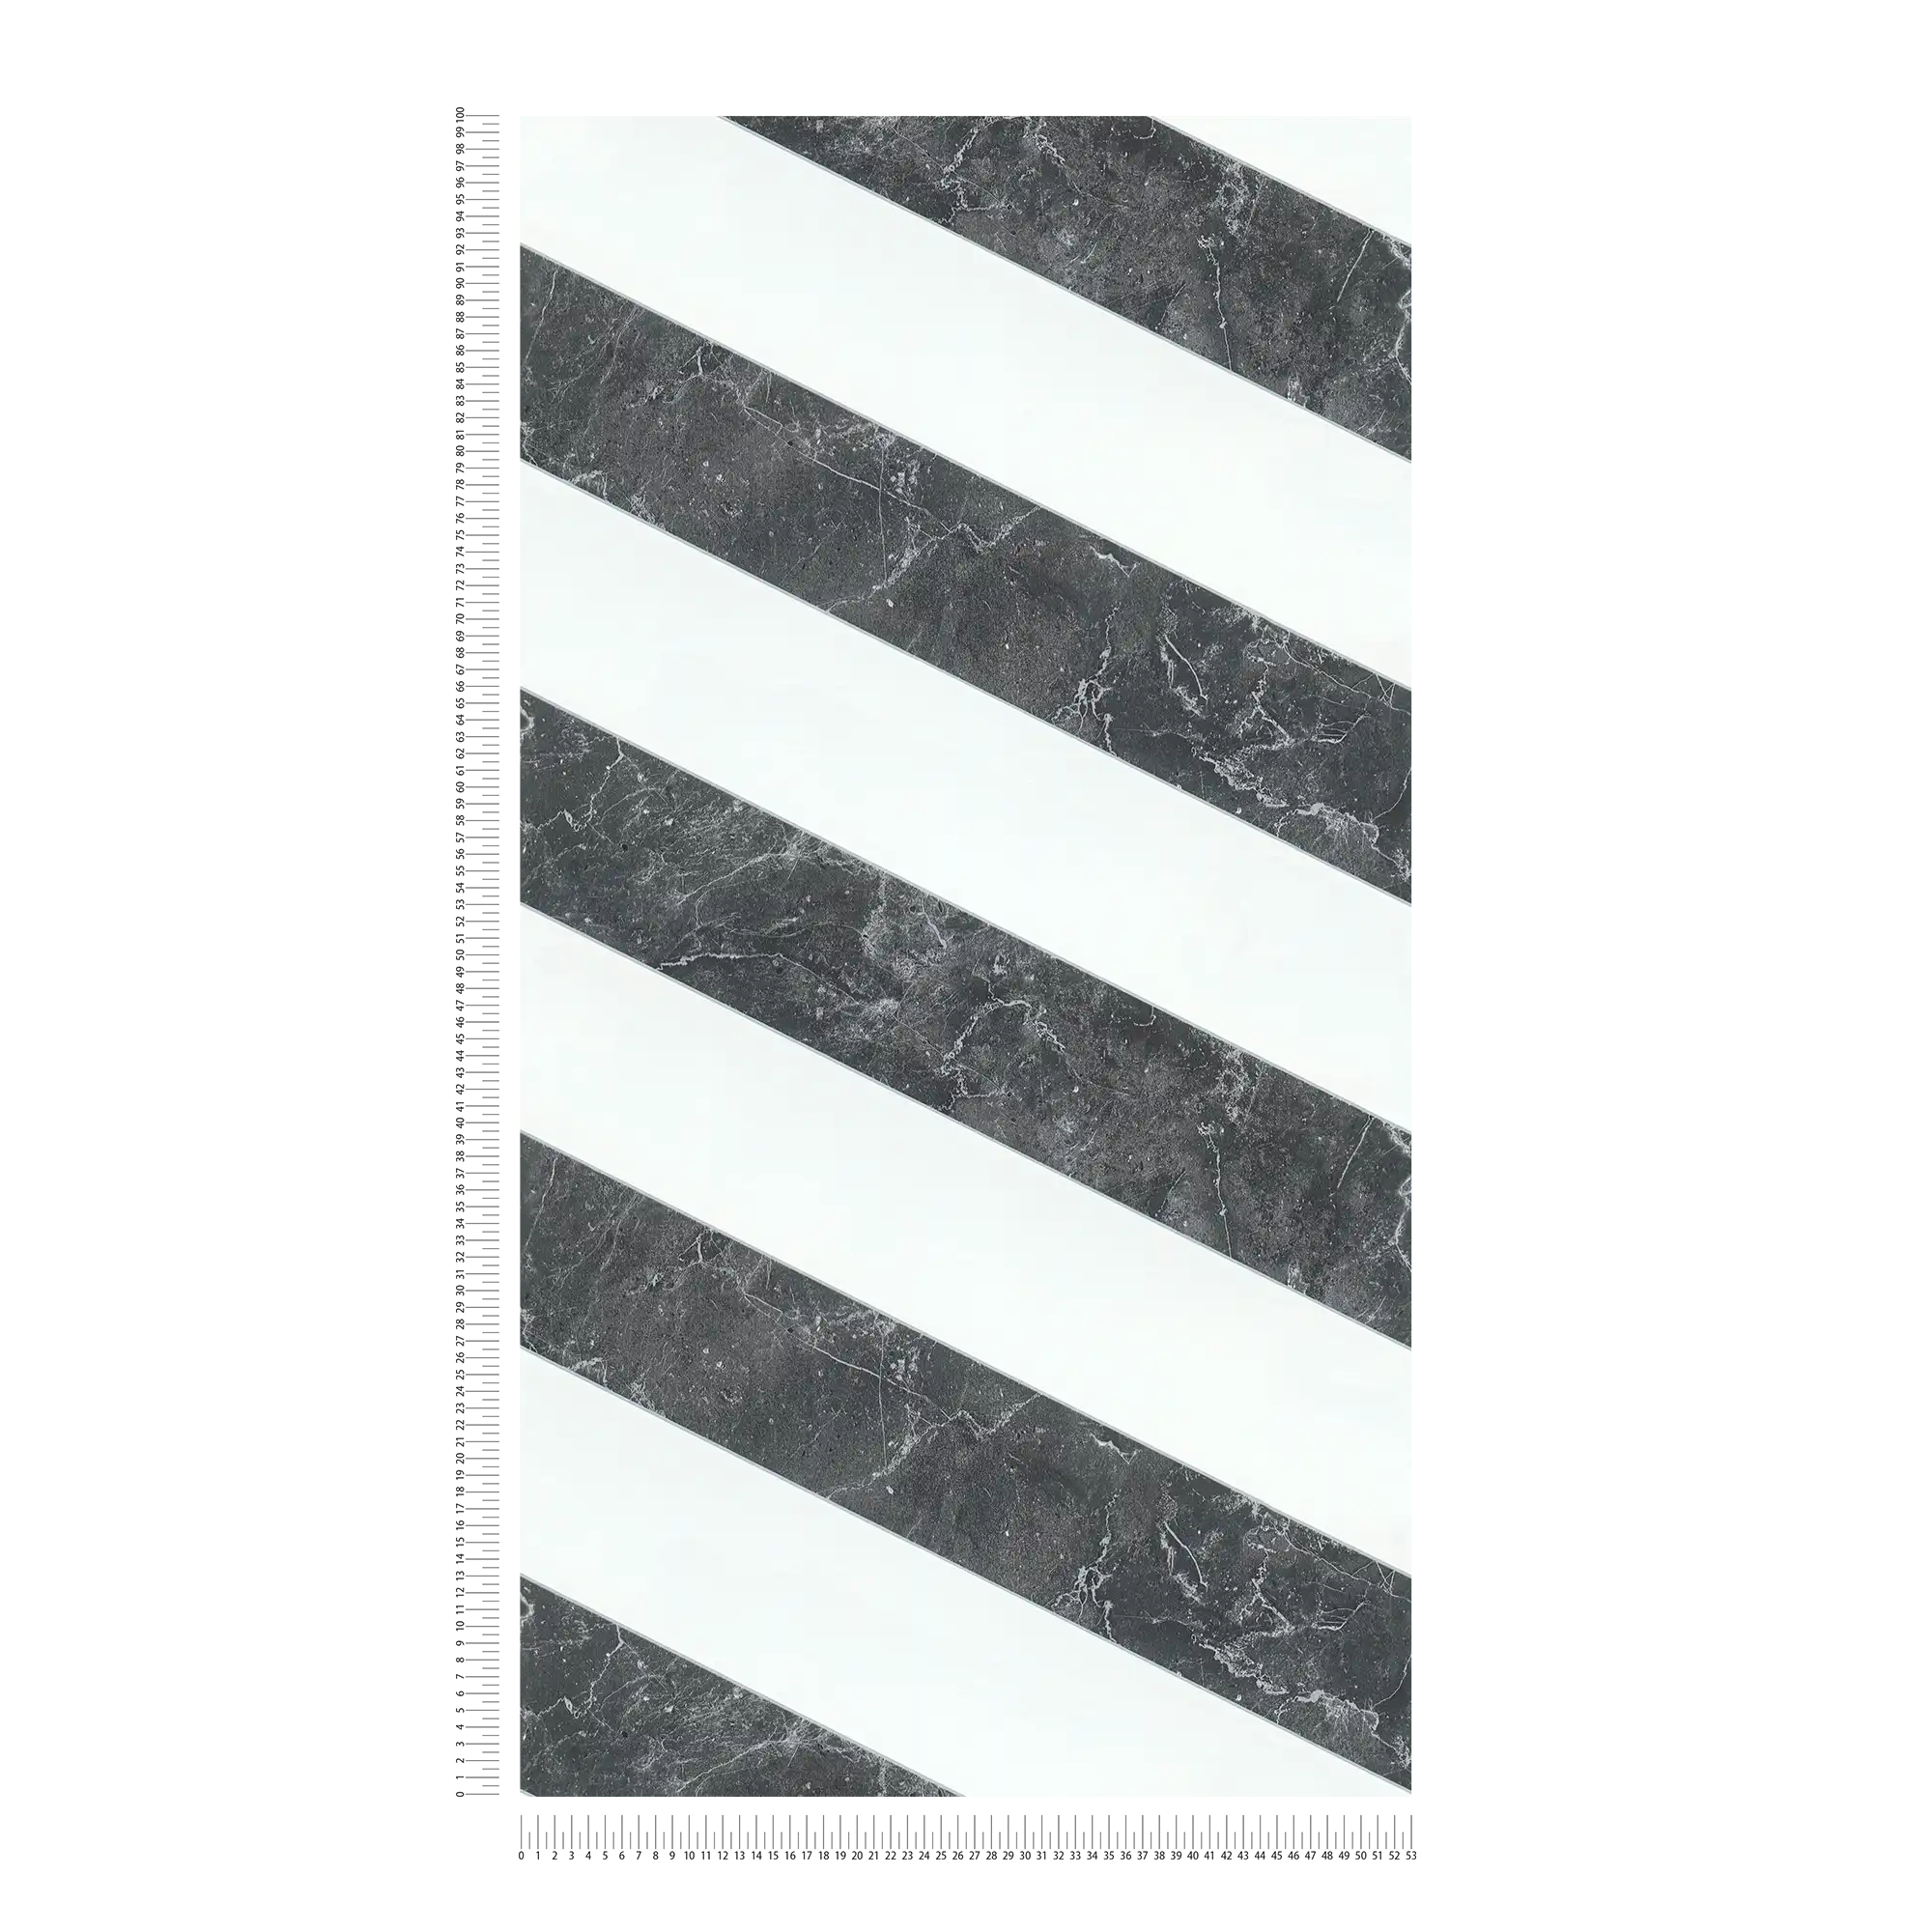             Papel pintado de rayas aspecto mármol rayas horizontales diseño blanco y negro
        